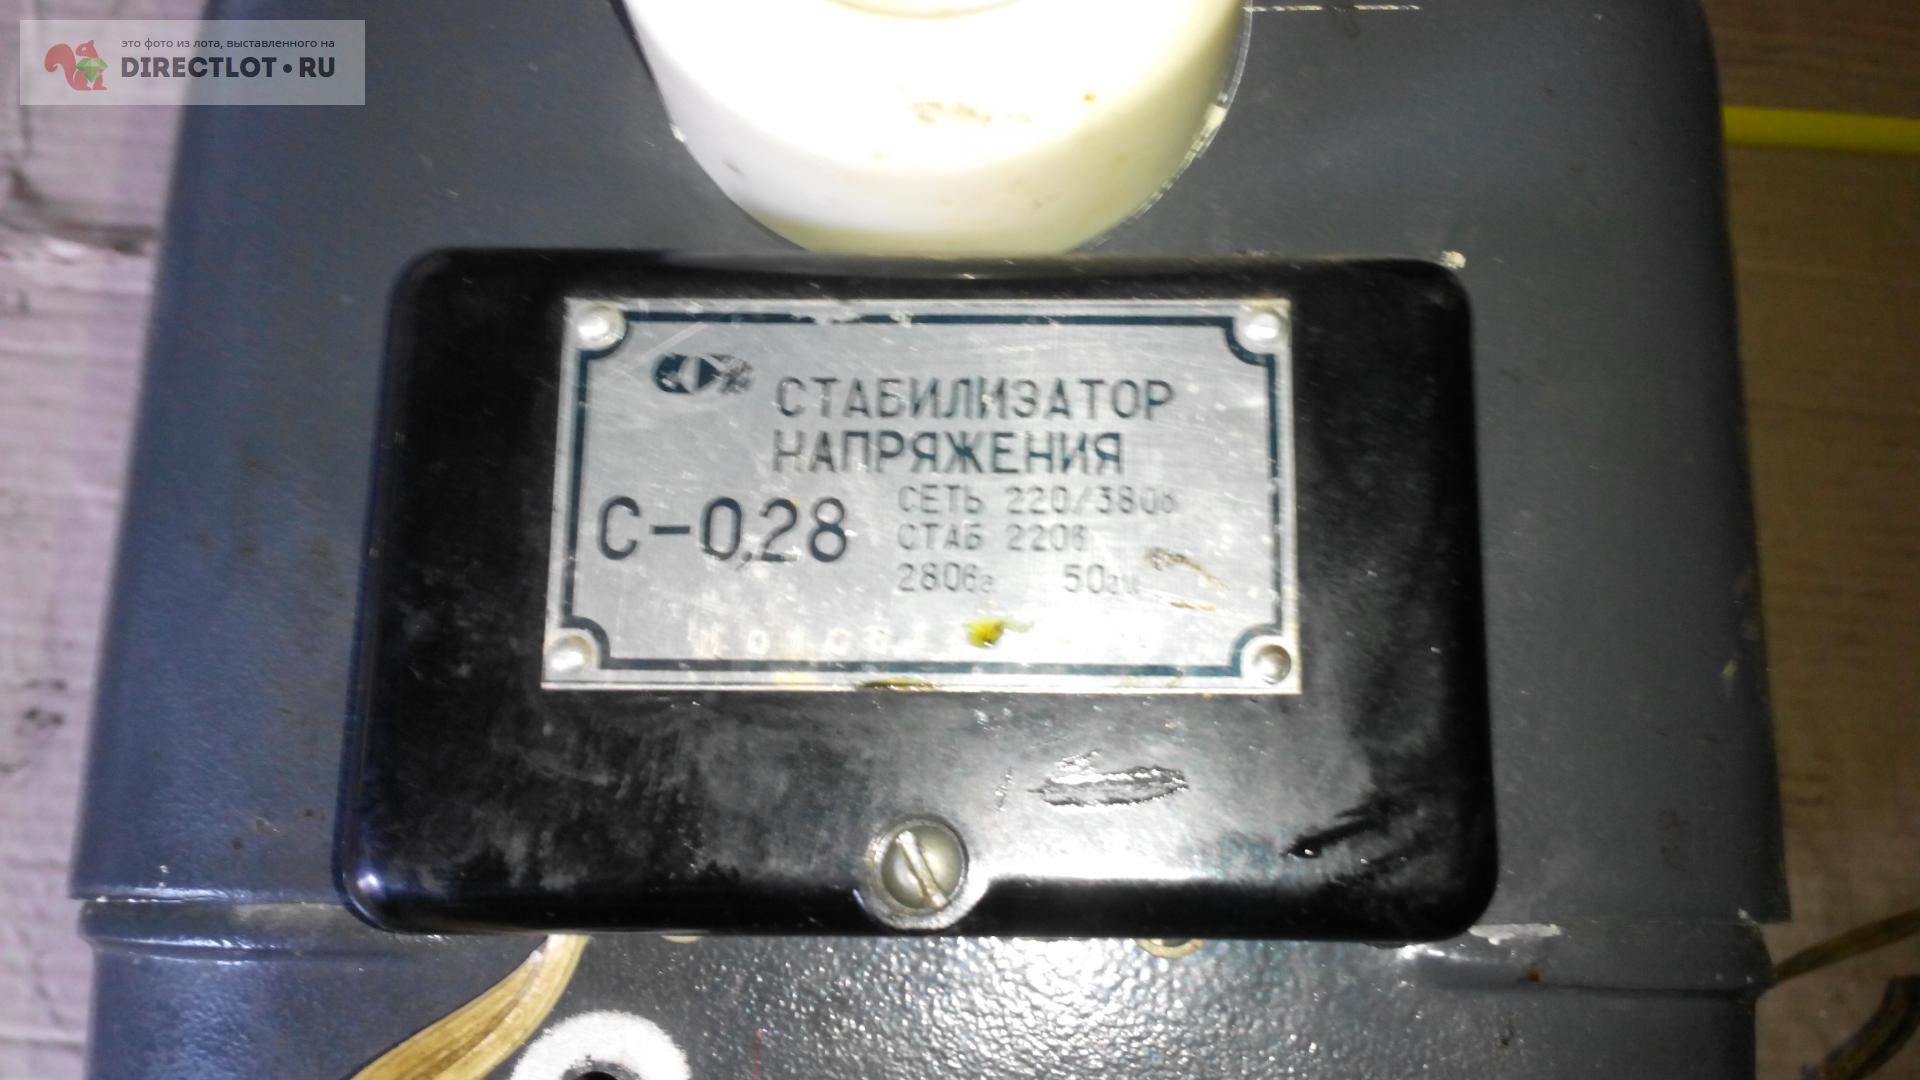 с-0.28 стабилизатор напряжения  в Брянске цена 900 Р на DIRECTLOT .